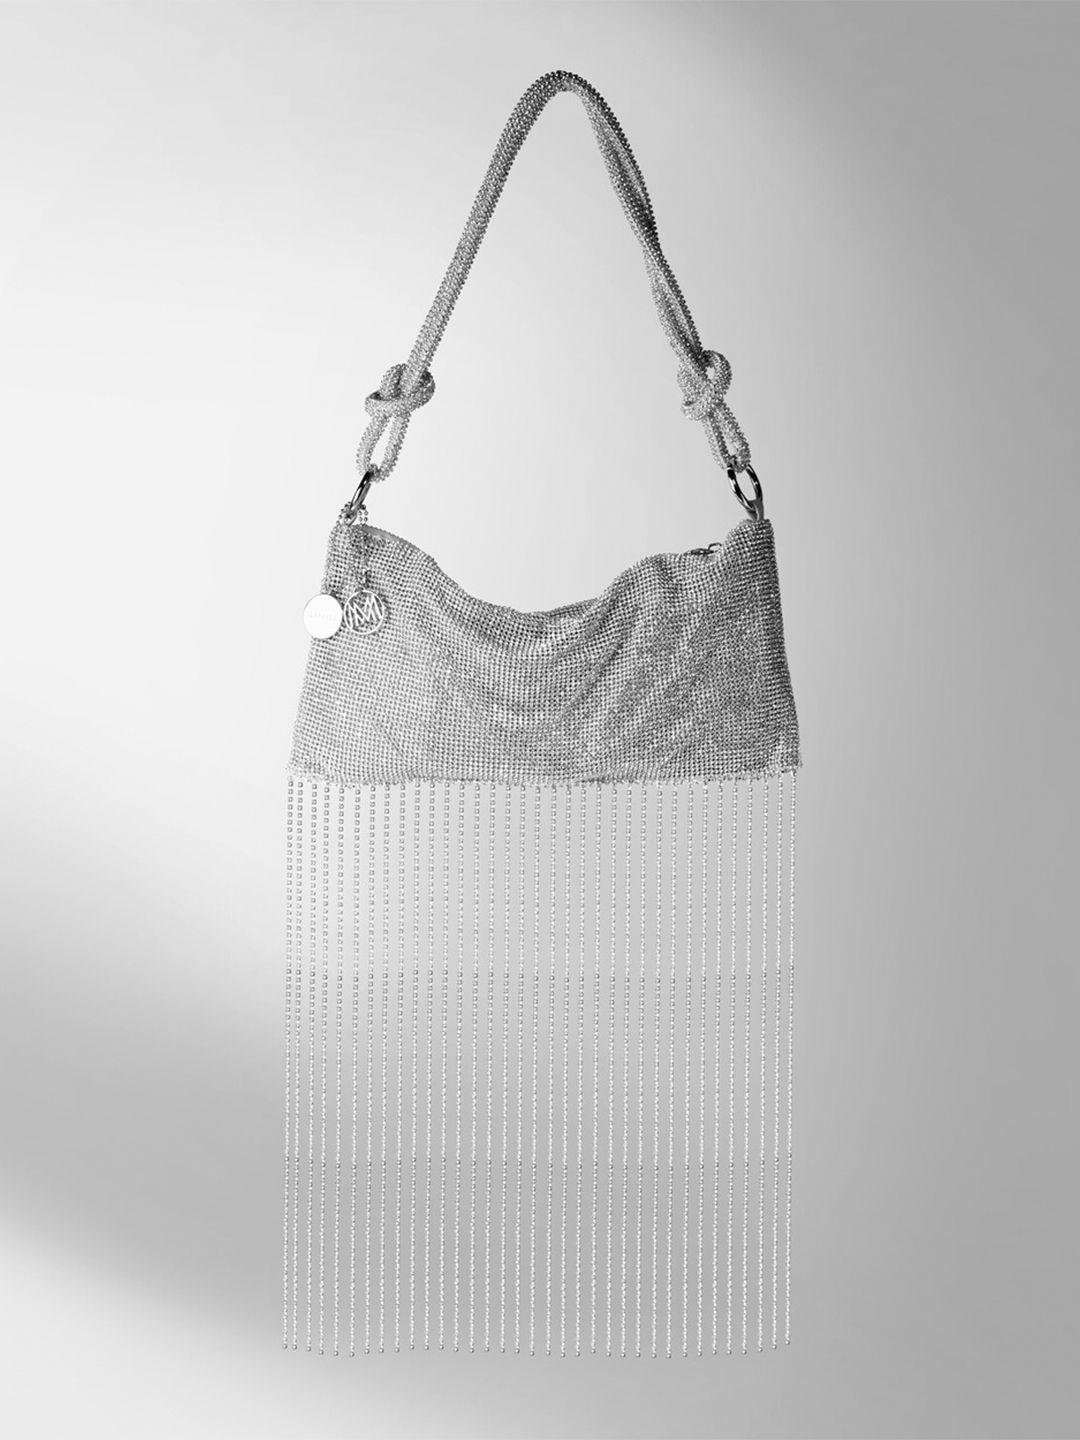 caprese embellished structured handheld bag